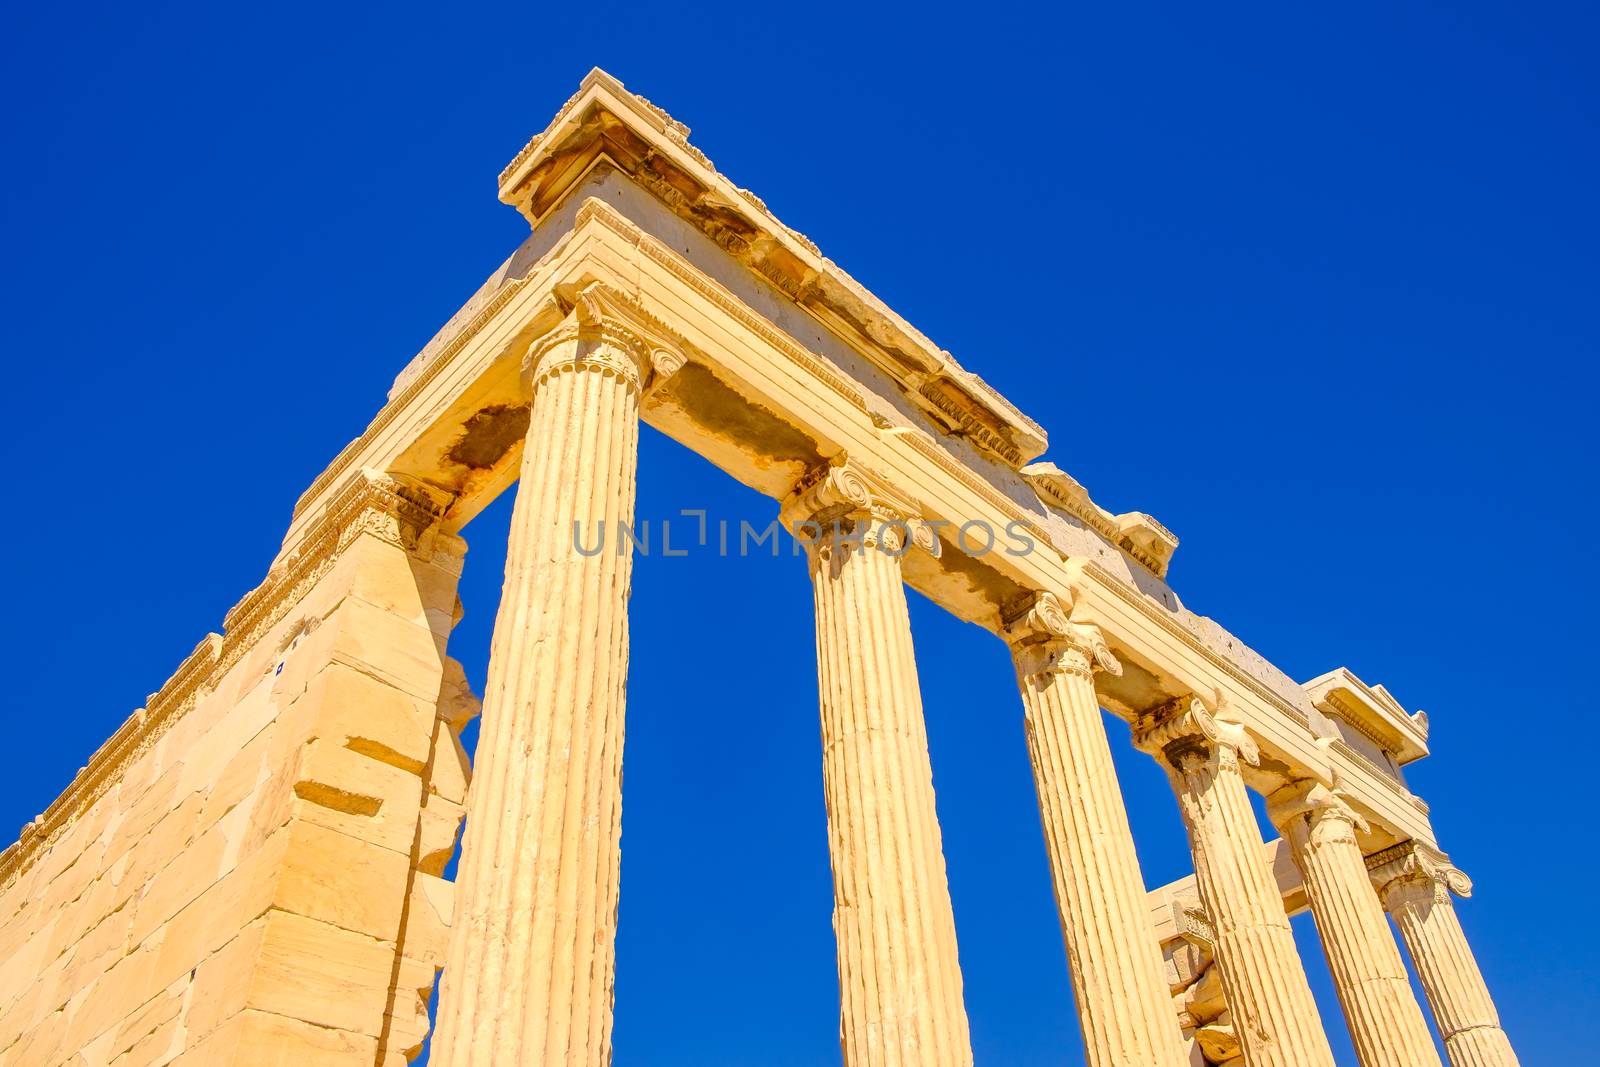 Architecture detail of ancient sandstone temple pillars, Acropolis, Athens